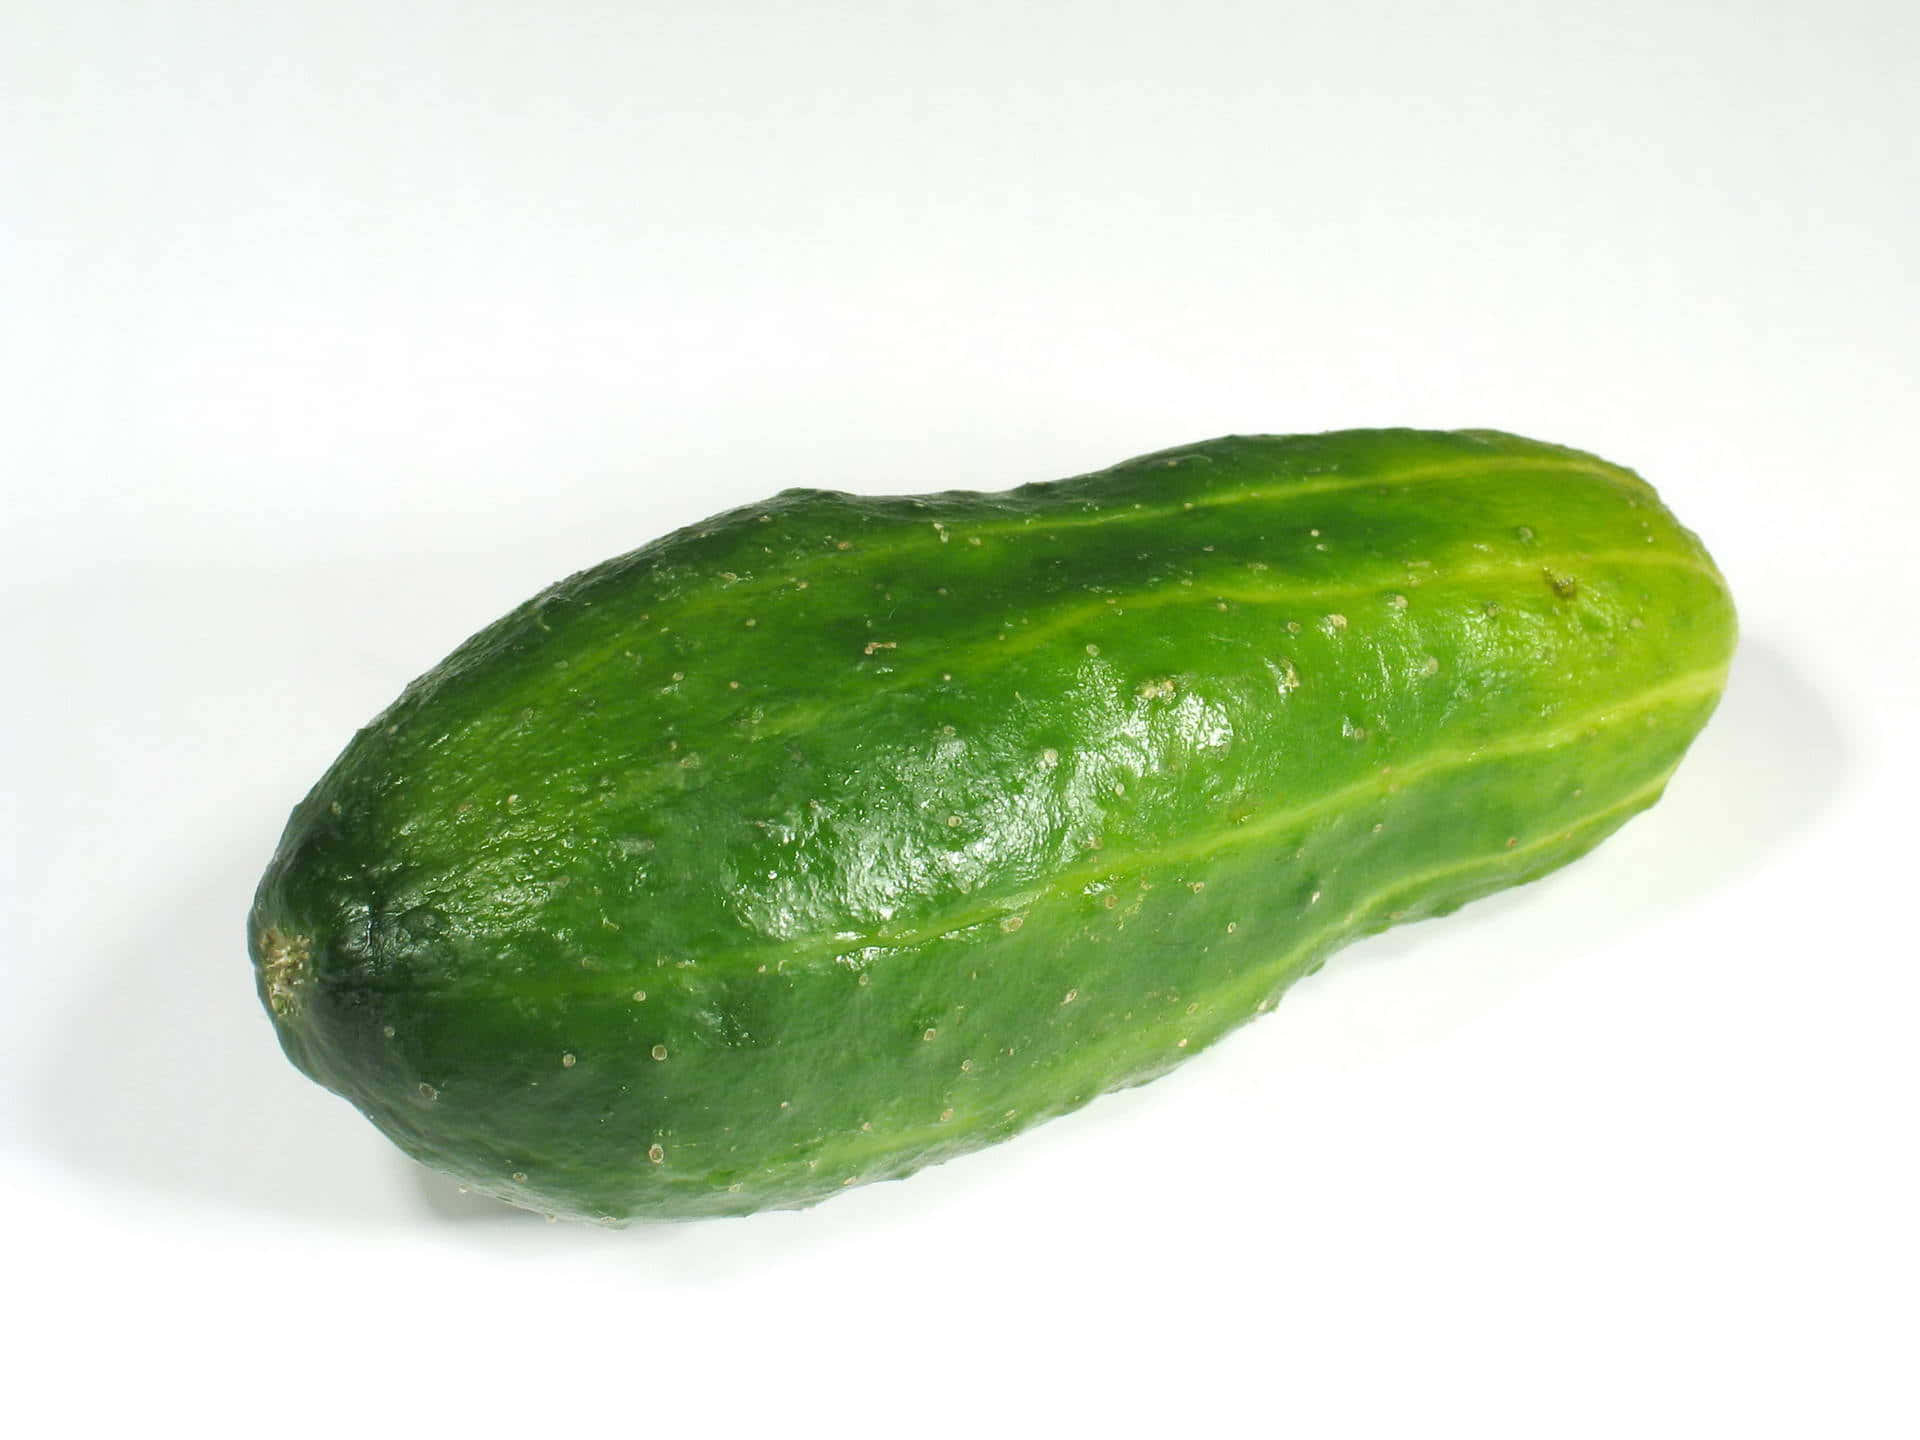 Closeup of a Cucumber